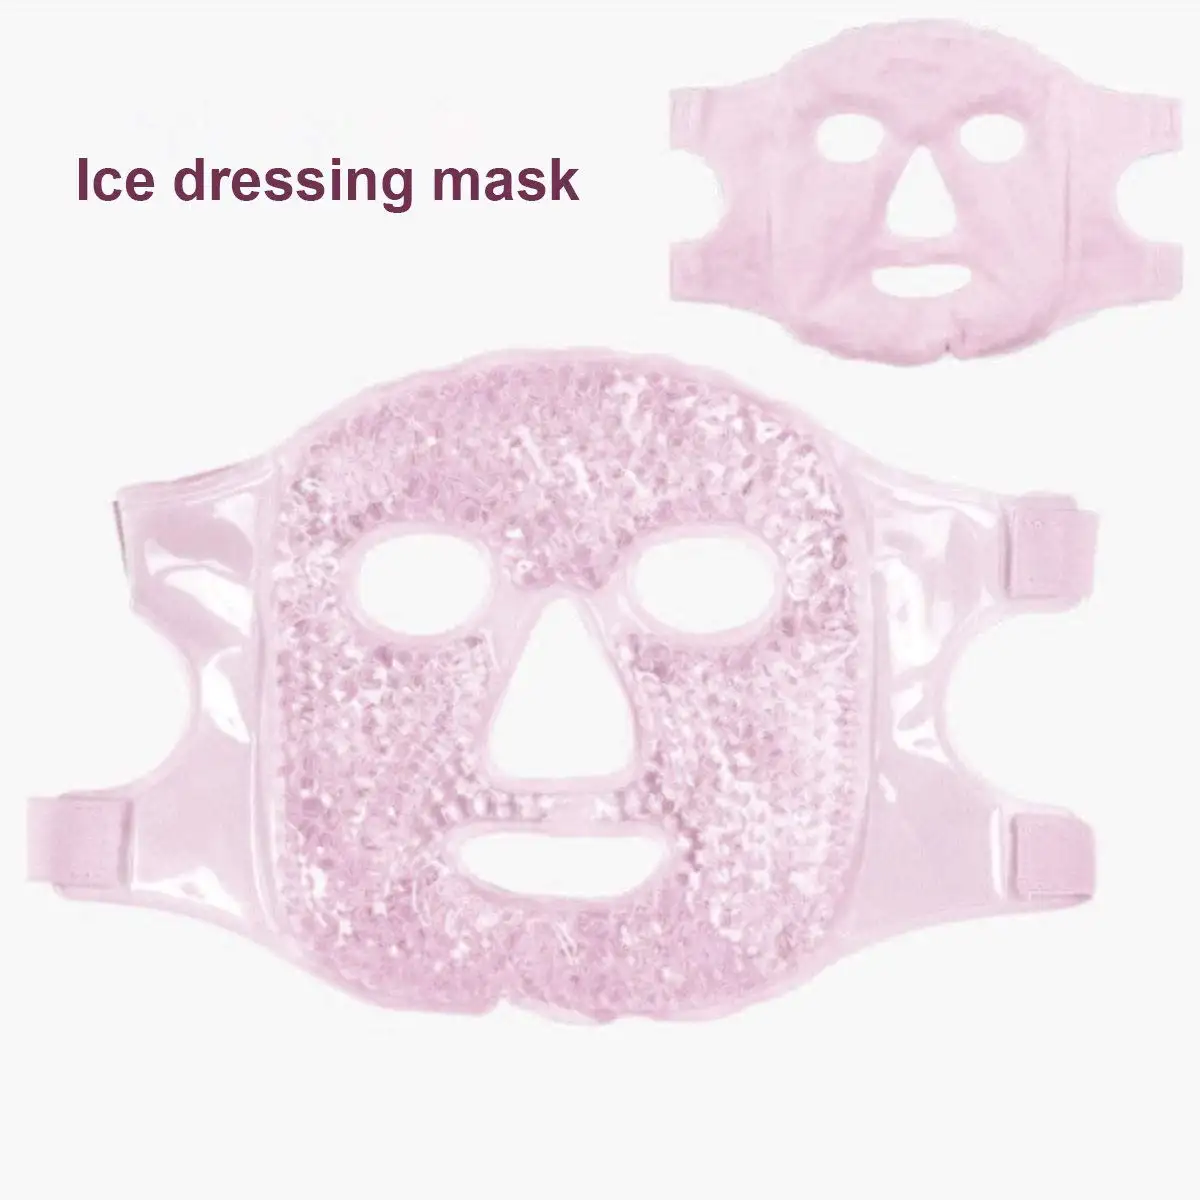 कोरिया गर्म ठंडा सेक facemask सौंदर्य चेहरा maskss सौंदर्य मॉइस्चराइजिंग पूरा चेहरा maskss अन्य देखभाल उत्पादों